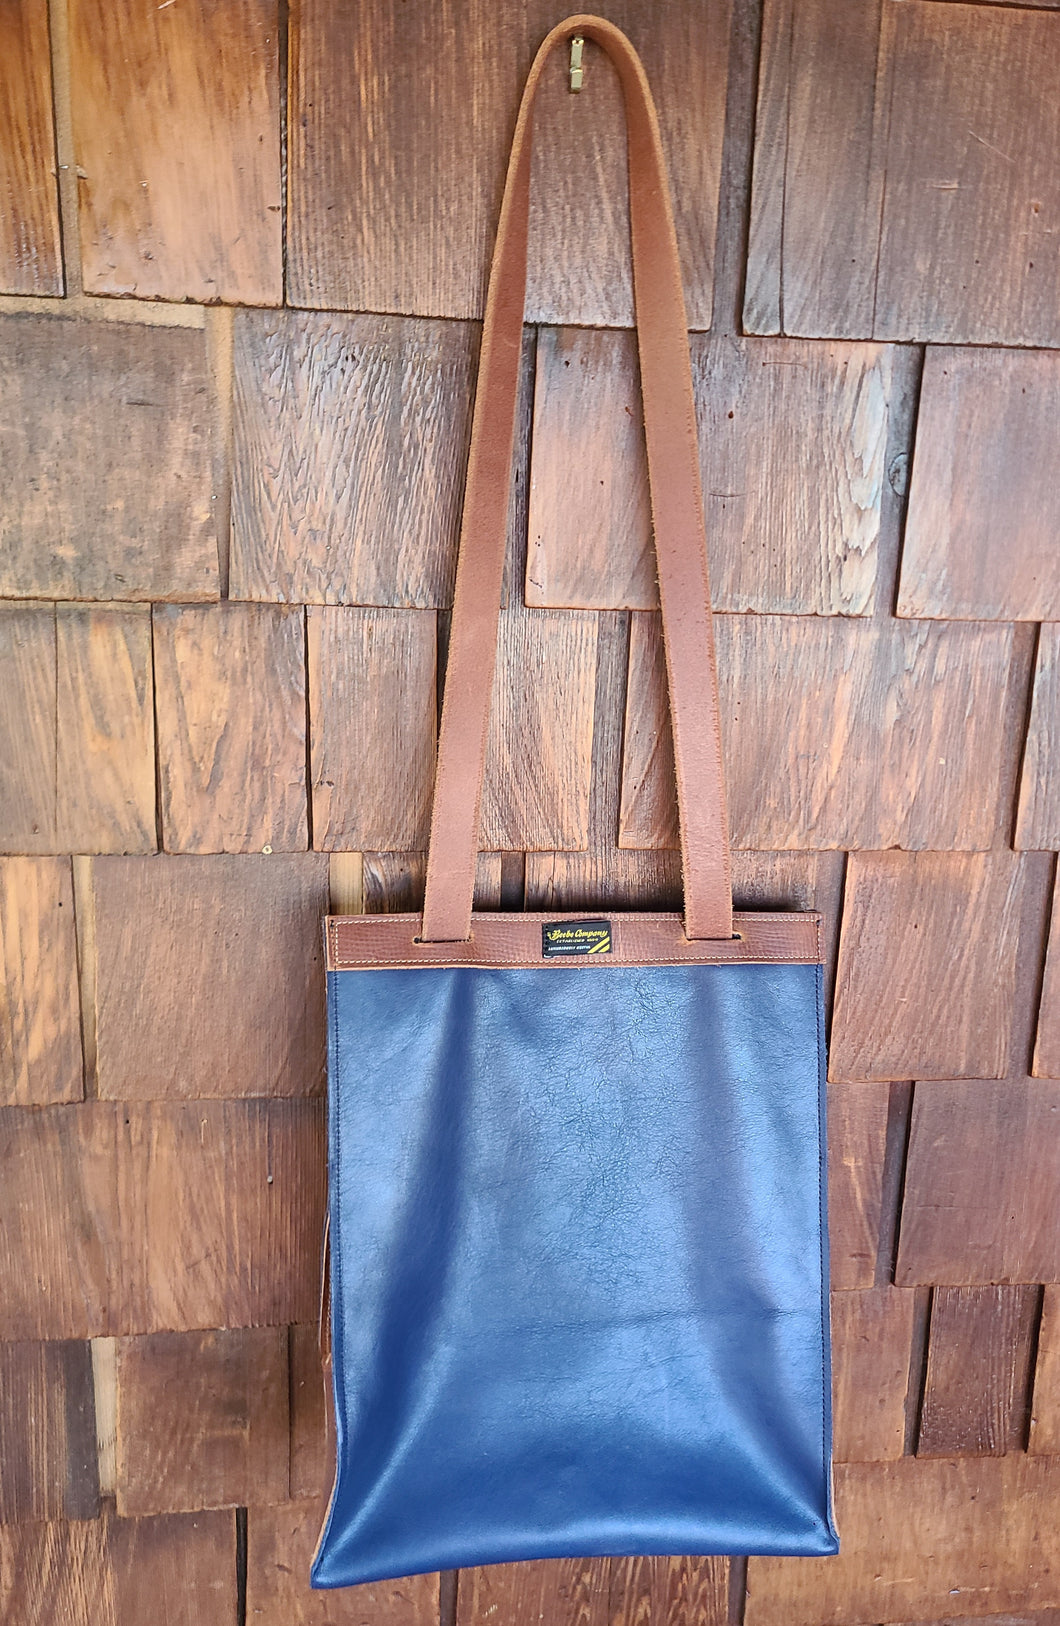 Convertible Backpack Shoulder Bag - Blue Leather